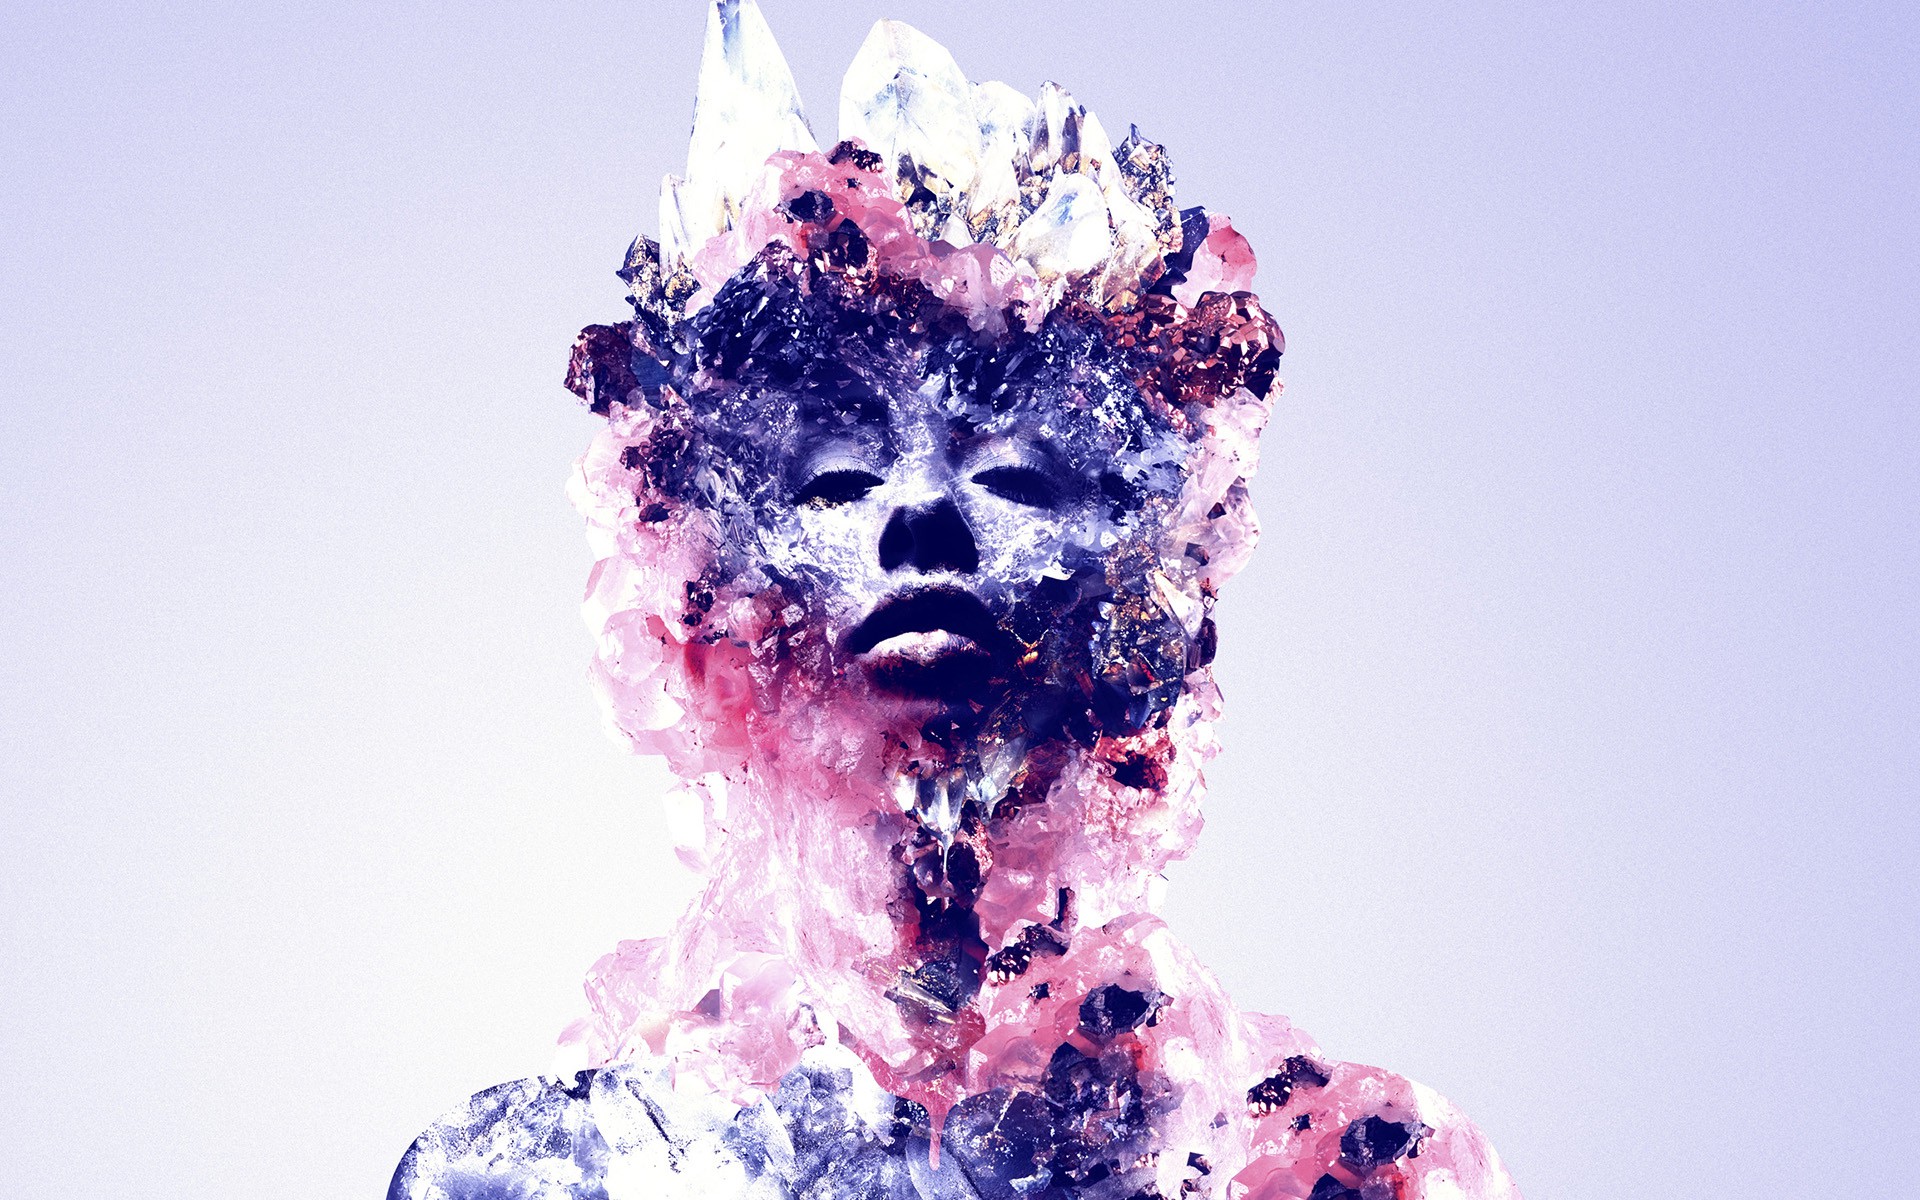 Justin Maller, Abstract, Digital Art, Face, Crystal Wallpaper